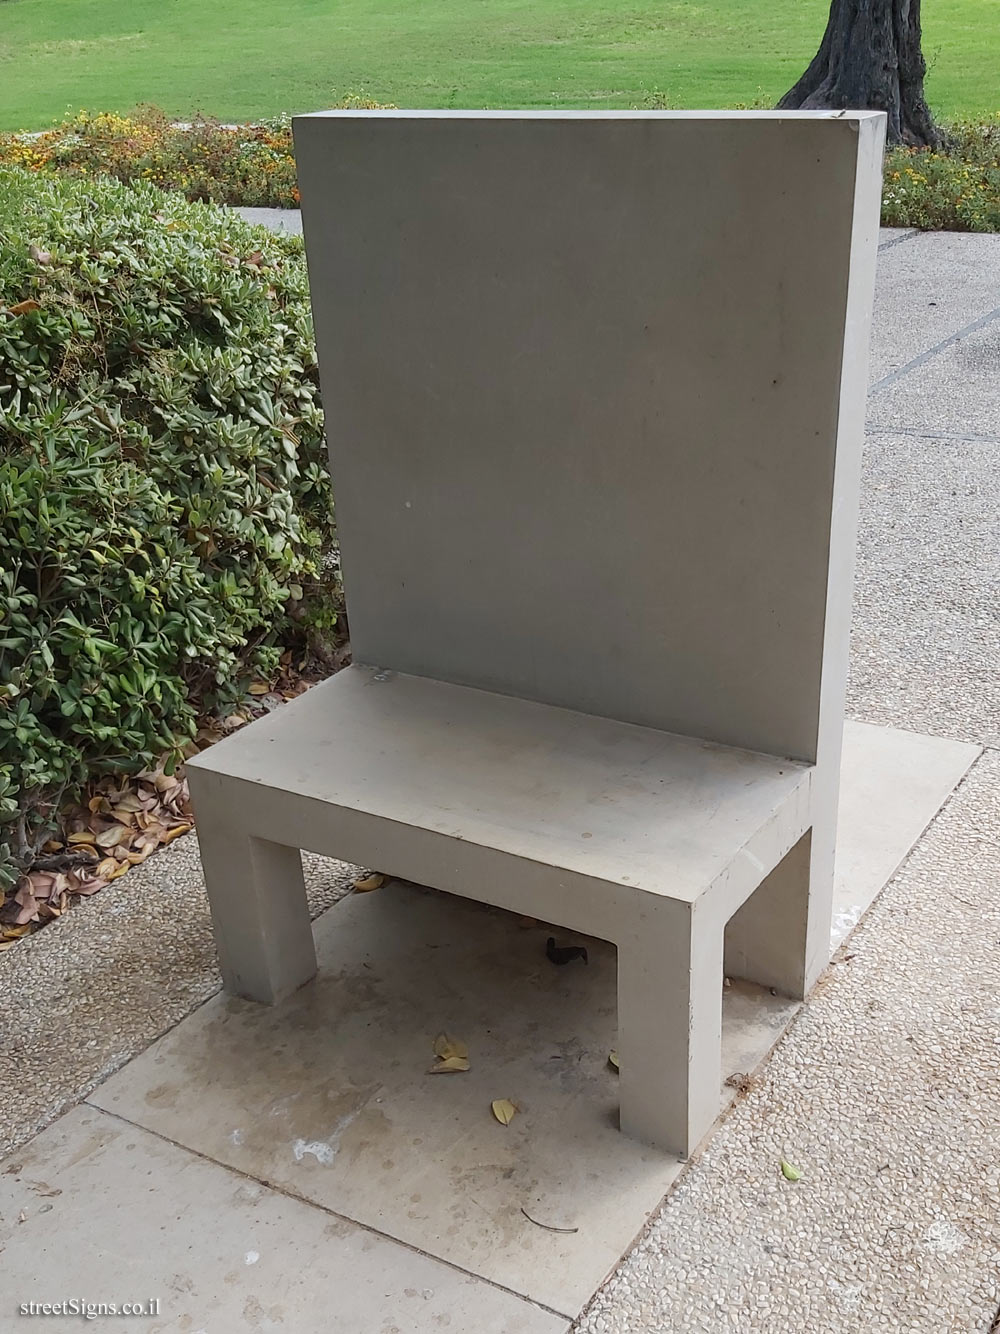 Tel Aviv - "The Bench" - outdoor sculpture by Dani Karavan - Tel Aviv University-Ramat Aviv Campus, Tel Aviv, Israel